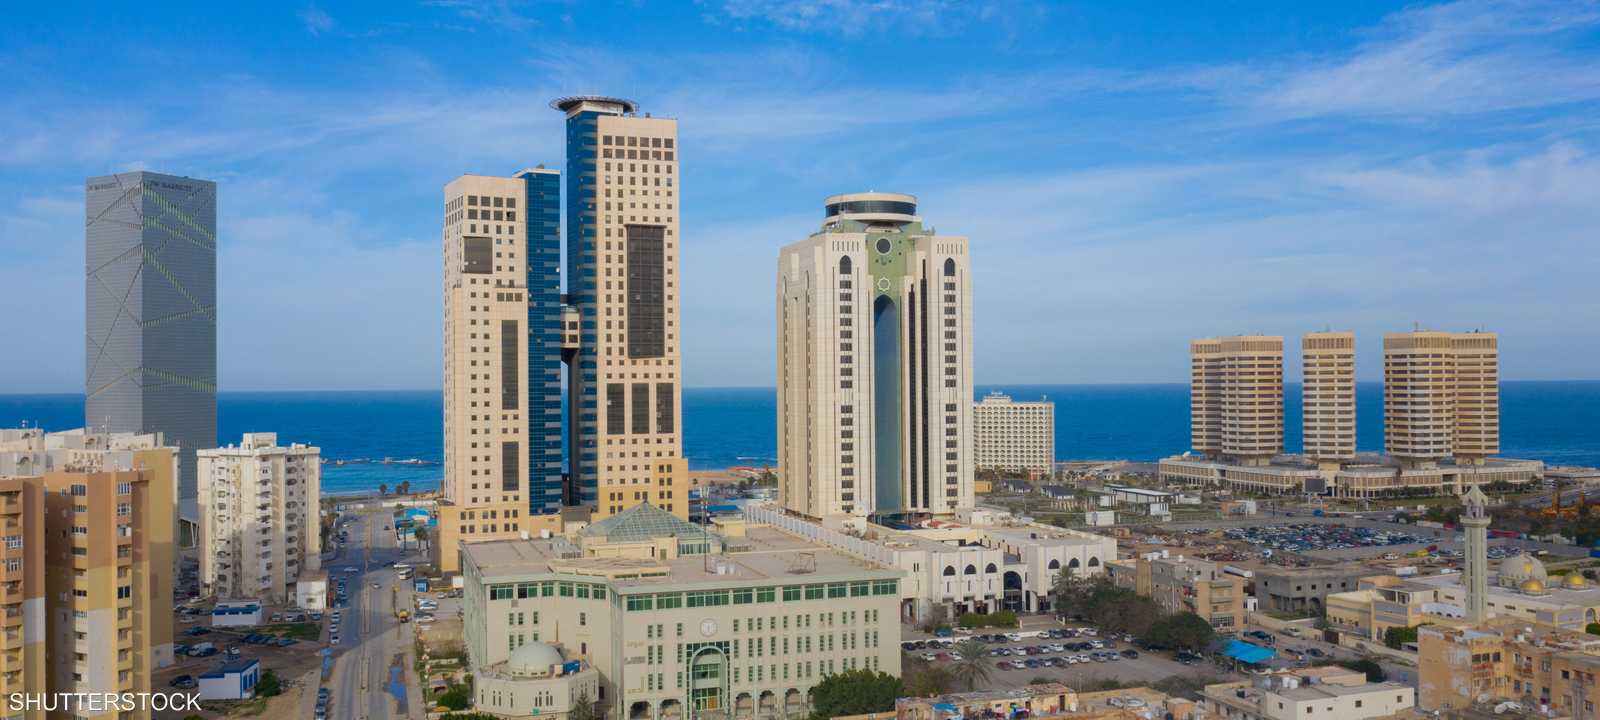 طرابلس، ليبيا - عاصمة ليبيا